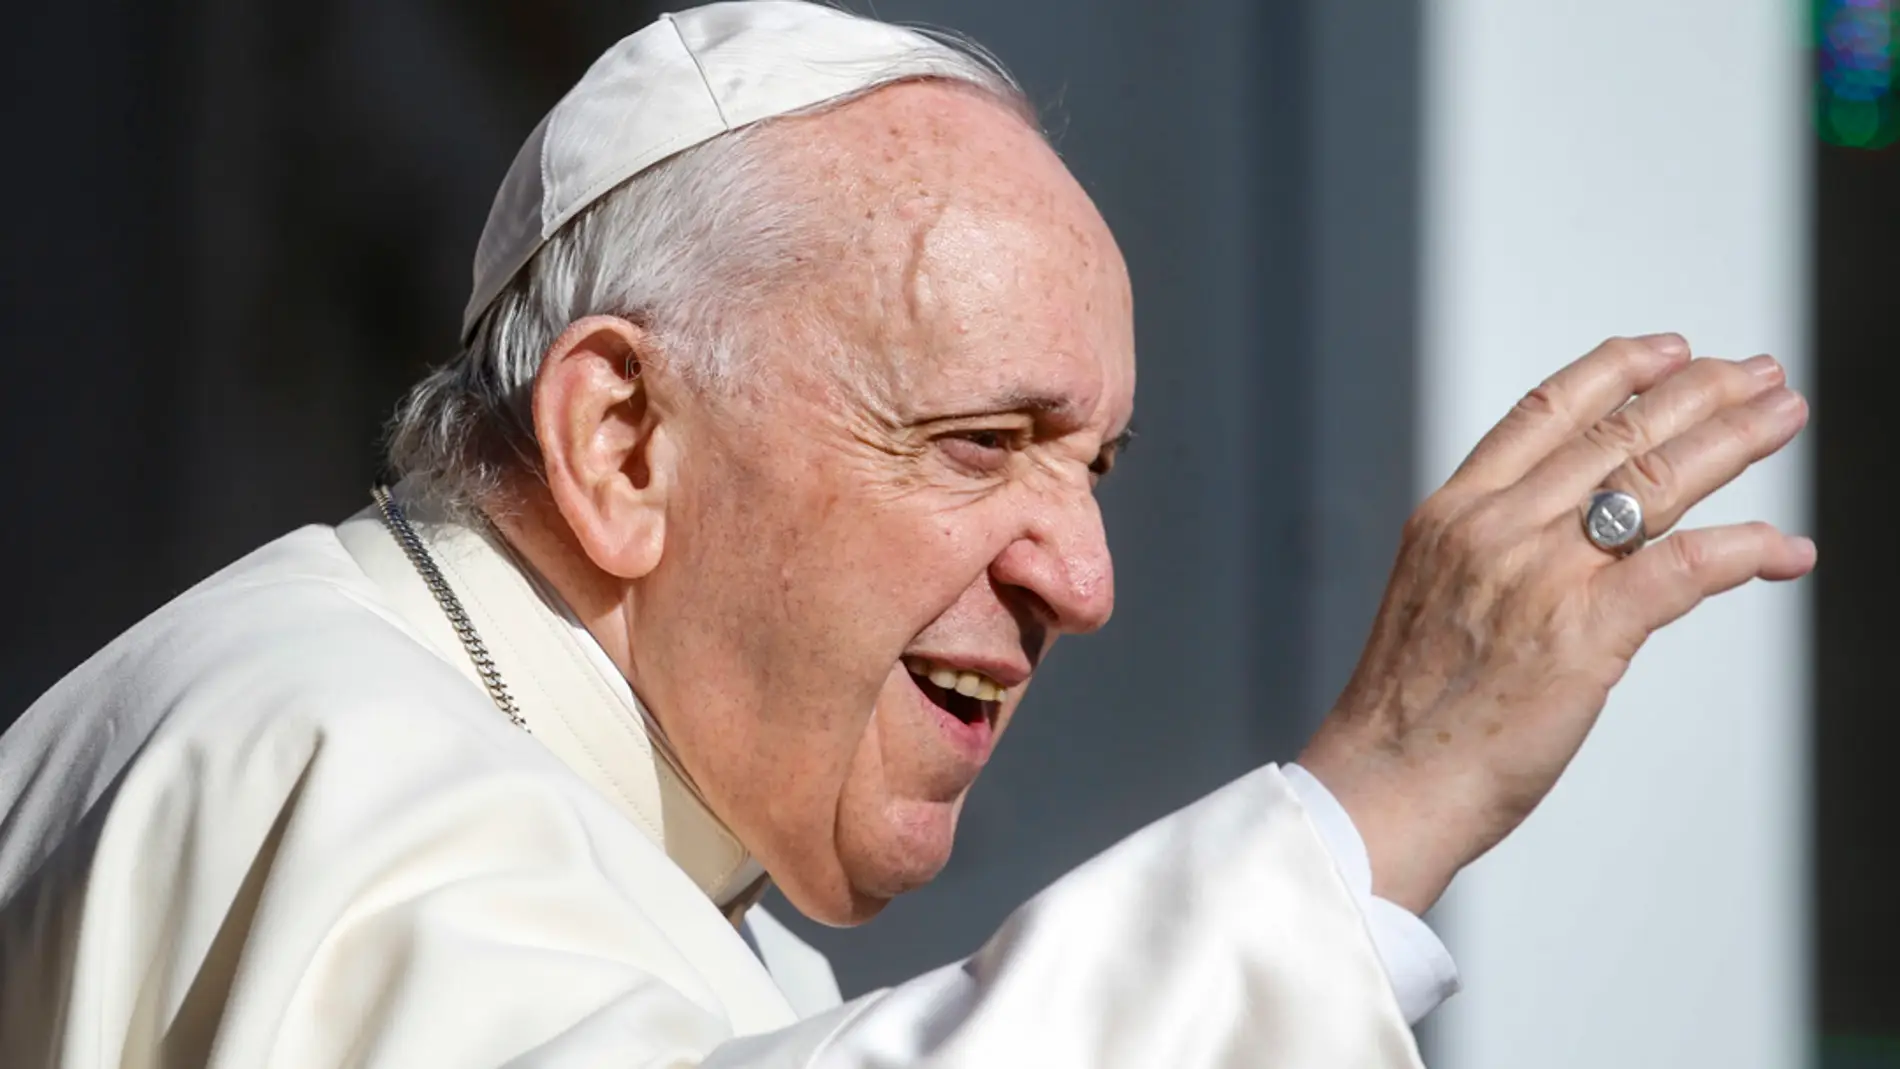 El papa pide que se trate mejor a suegras, pero que ellas no critiquen/ EFE/EPA/FABIO FRUSTACI